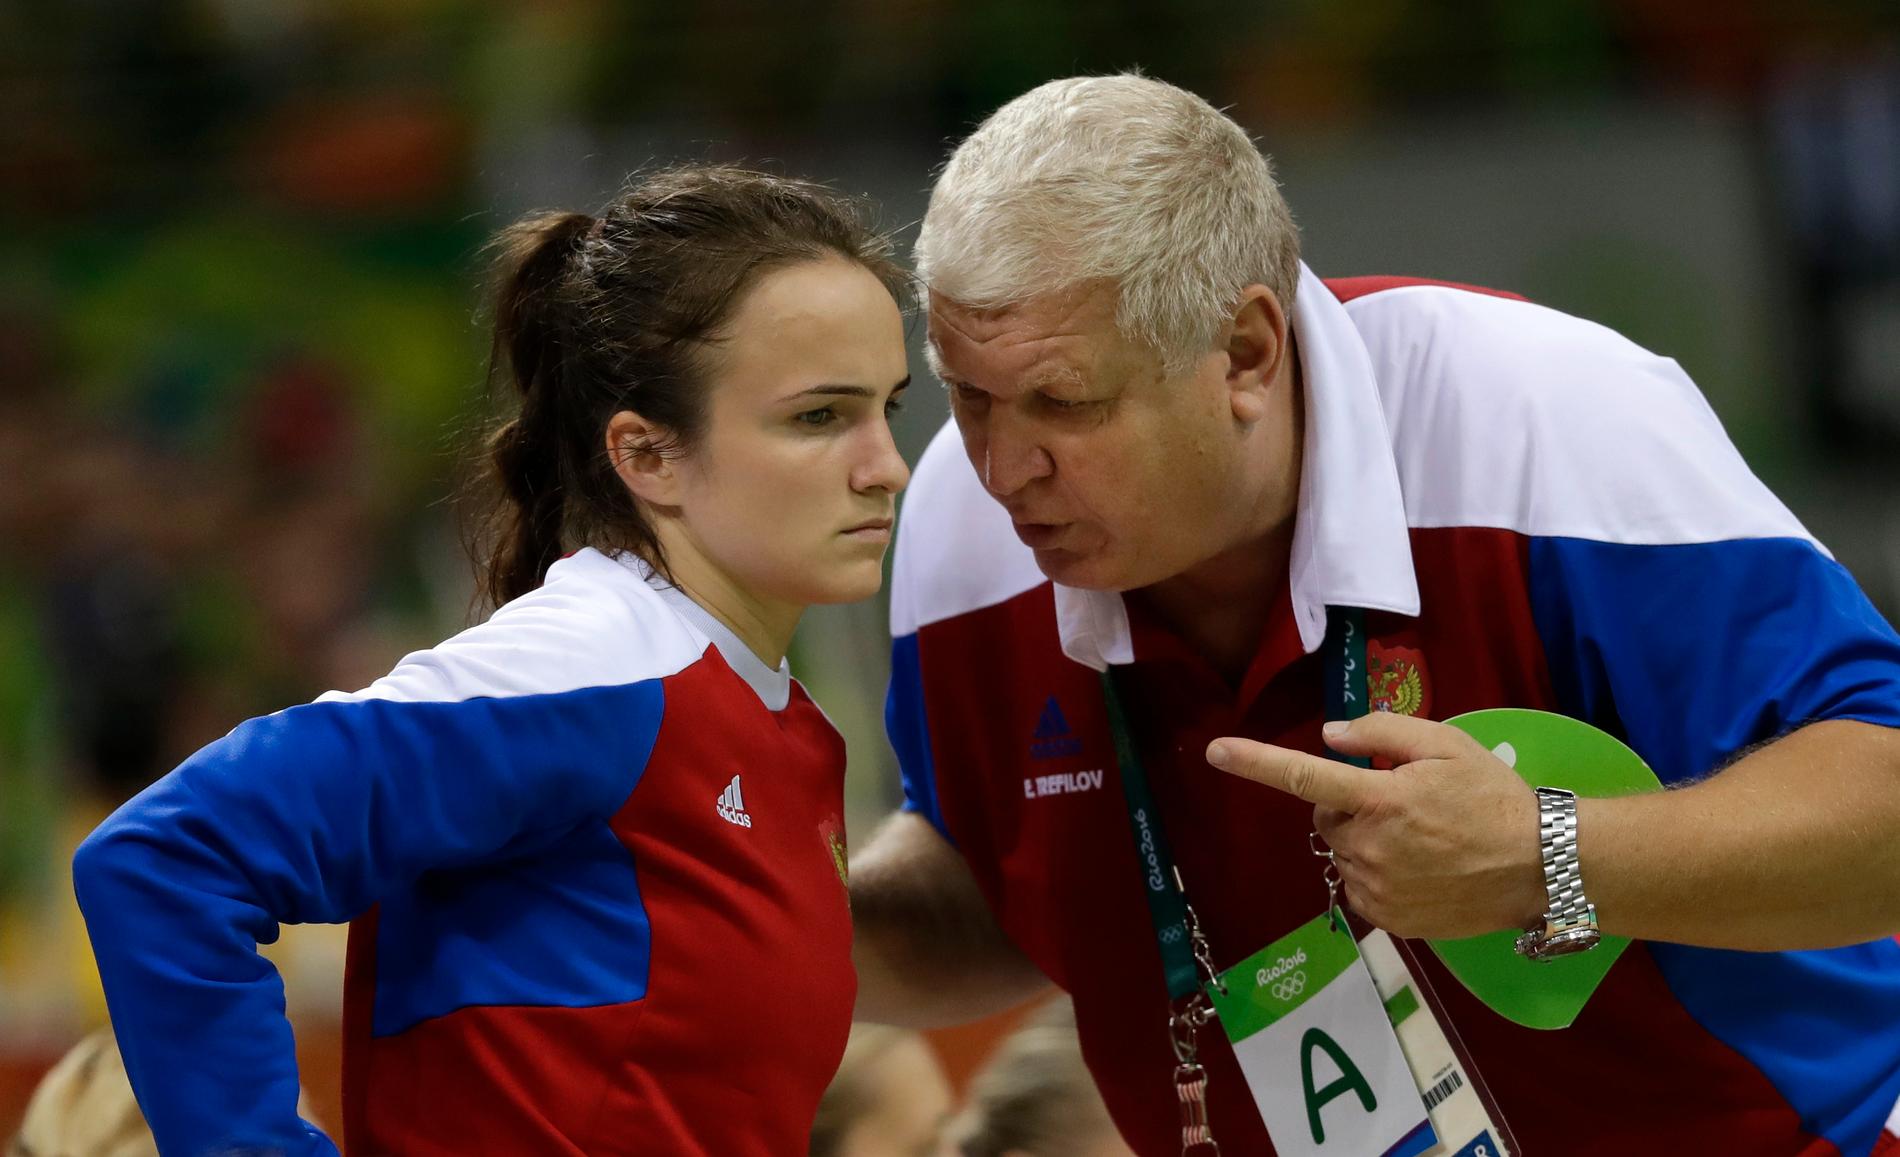 SJEFEN: Anna Vjakhireva og Jevgenij Trefilov vant OL-gull sammen - og er begge populære i Russland. Men Vjakhireva forteller at de ikke snakker sammen.